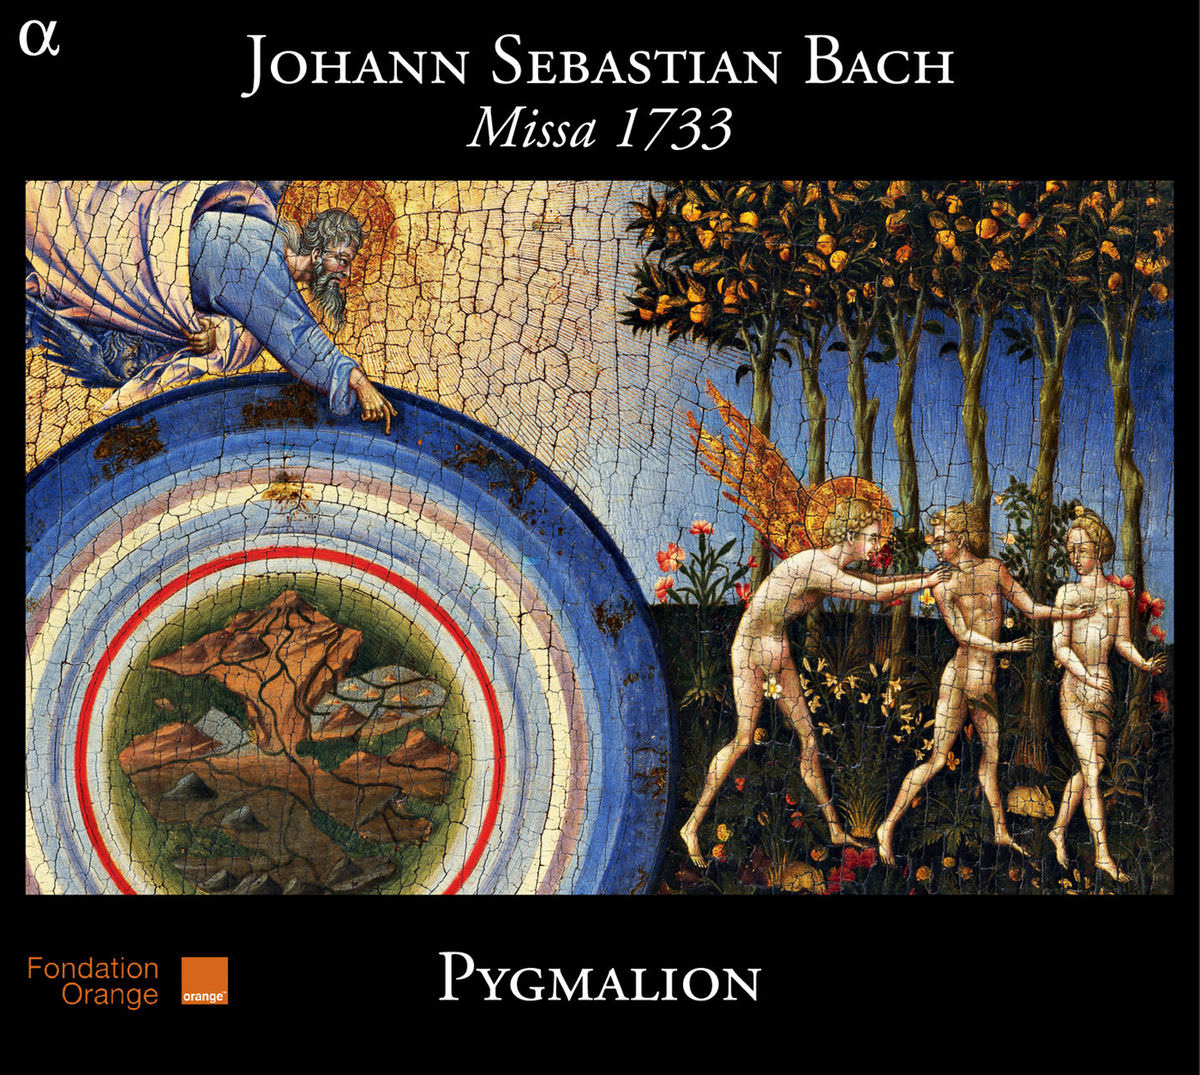 Ensemble Pygmalion, Raphael Pichon - Bach: Missa 1733 (2012) [FLAC 24bit/44,1kHz]